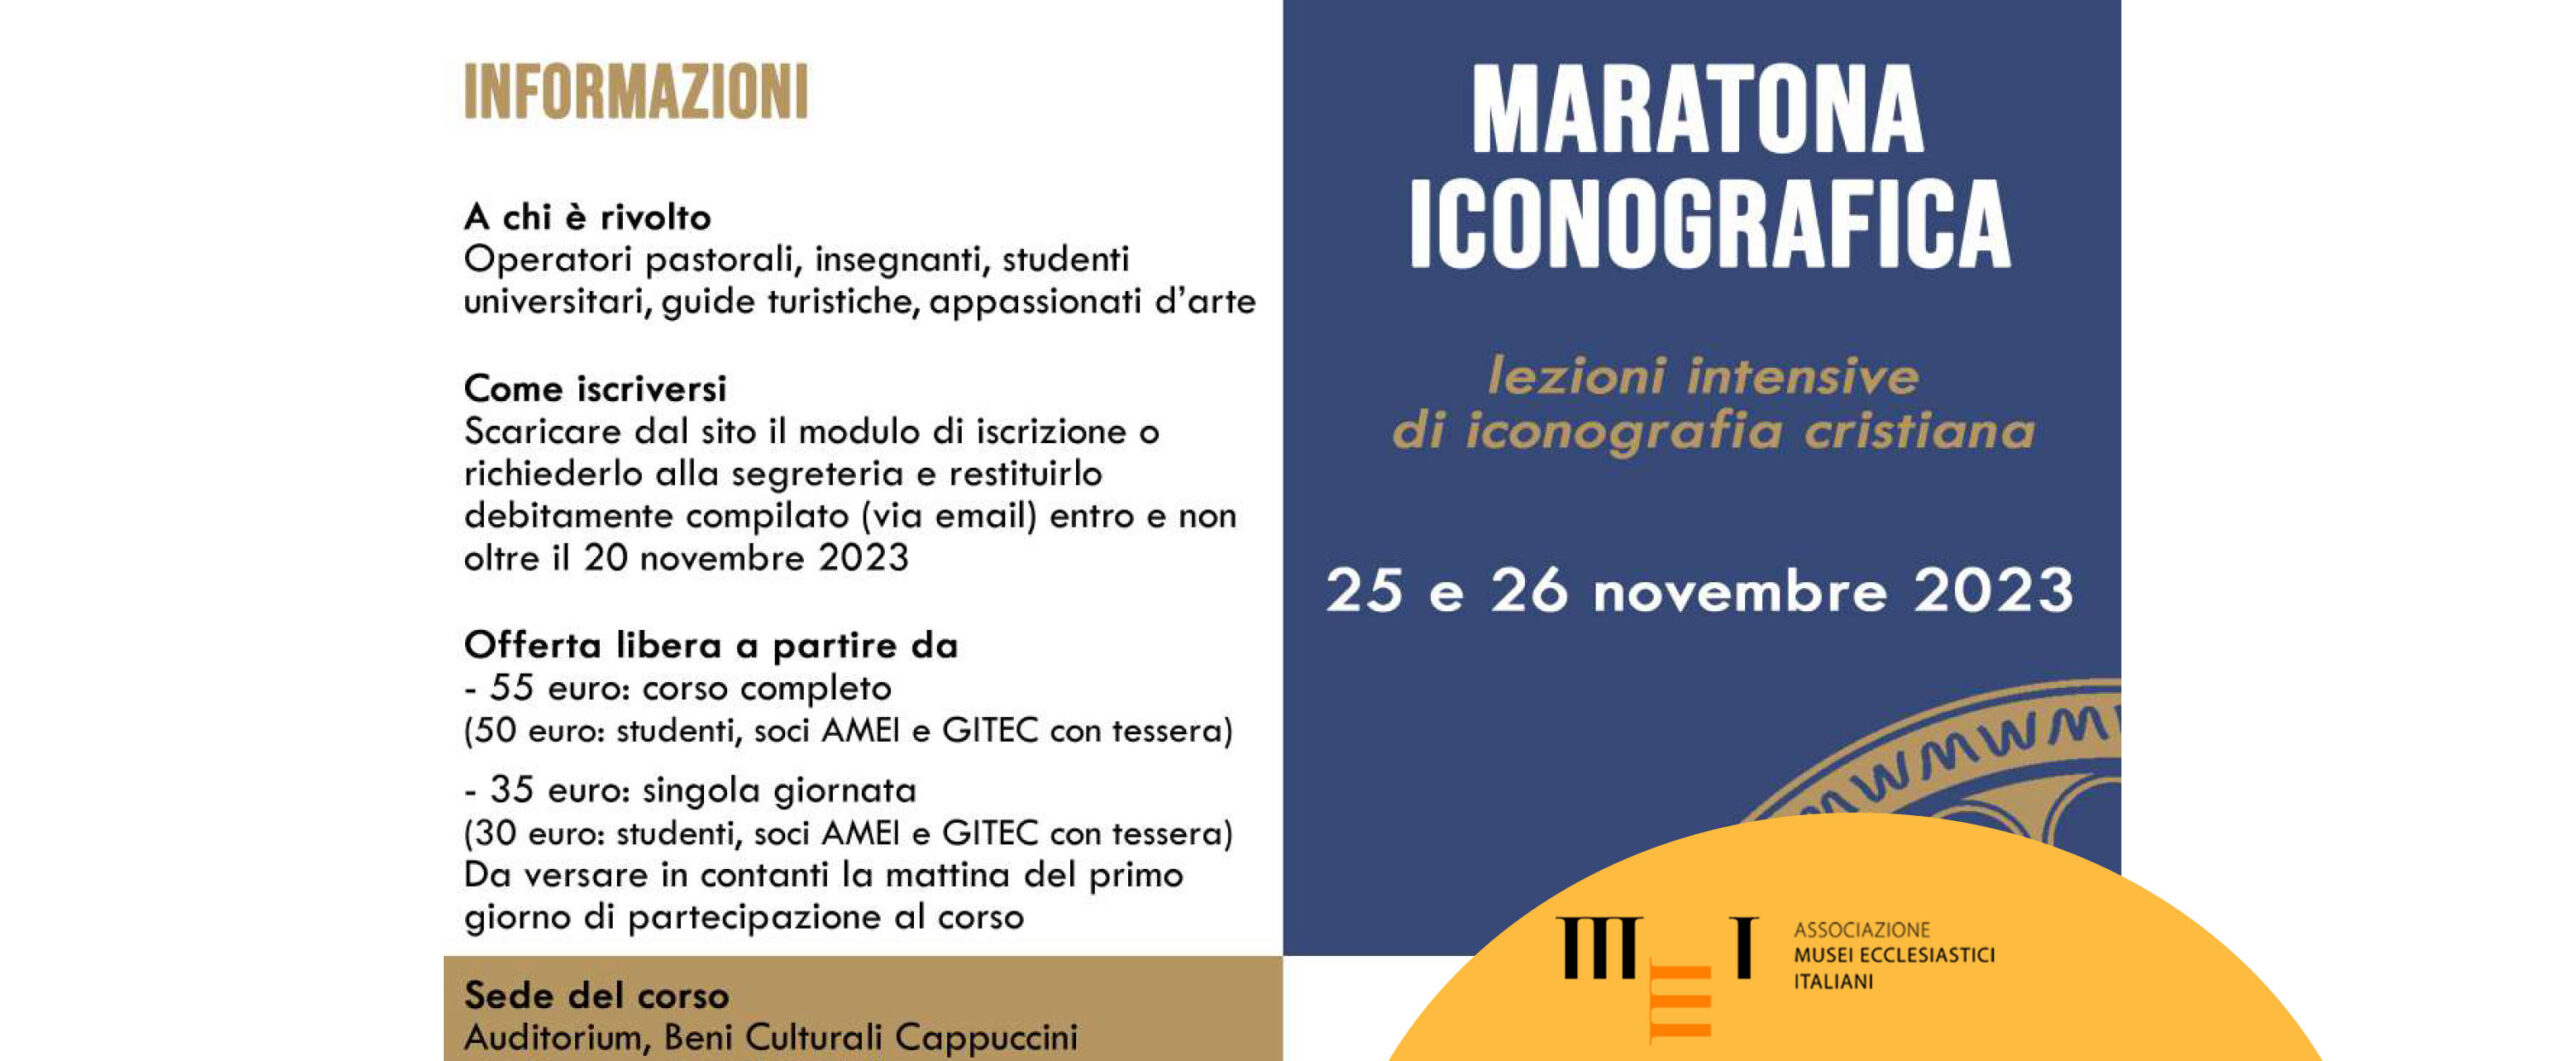 Maratona iconografica - 25 e 26 novembre 2023 all'Auditorium Beni Culturali Cappuccini